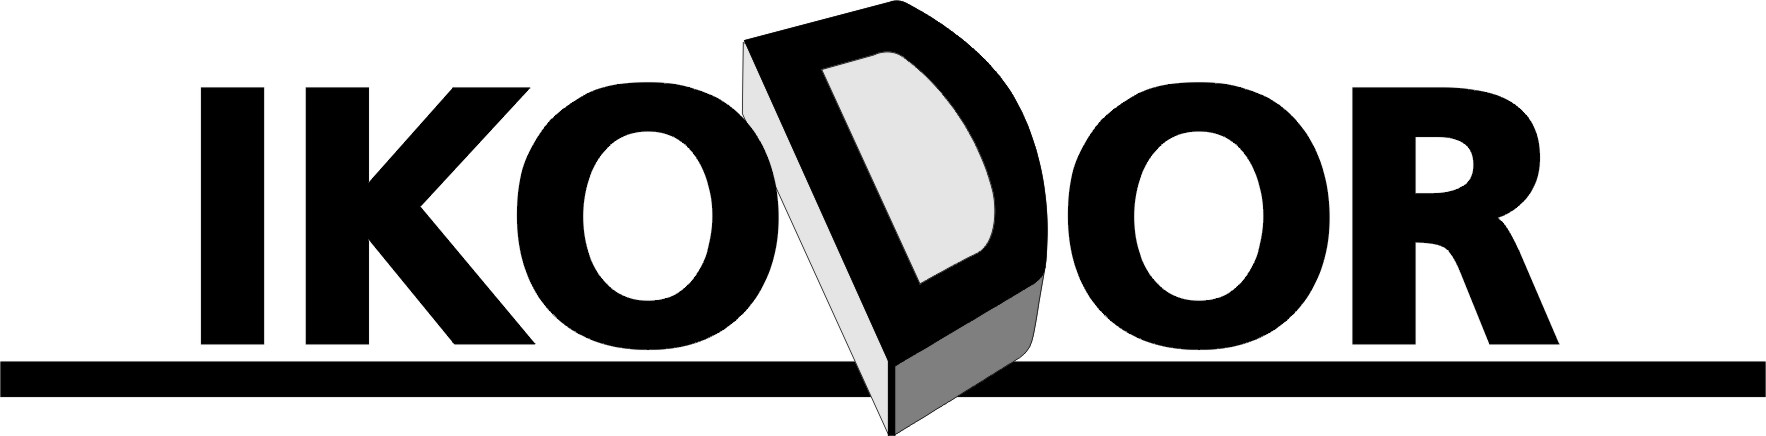 ikodor logo 3D